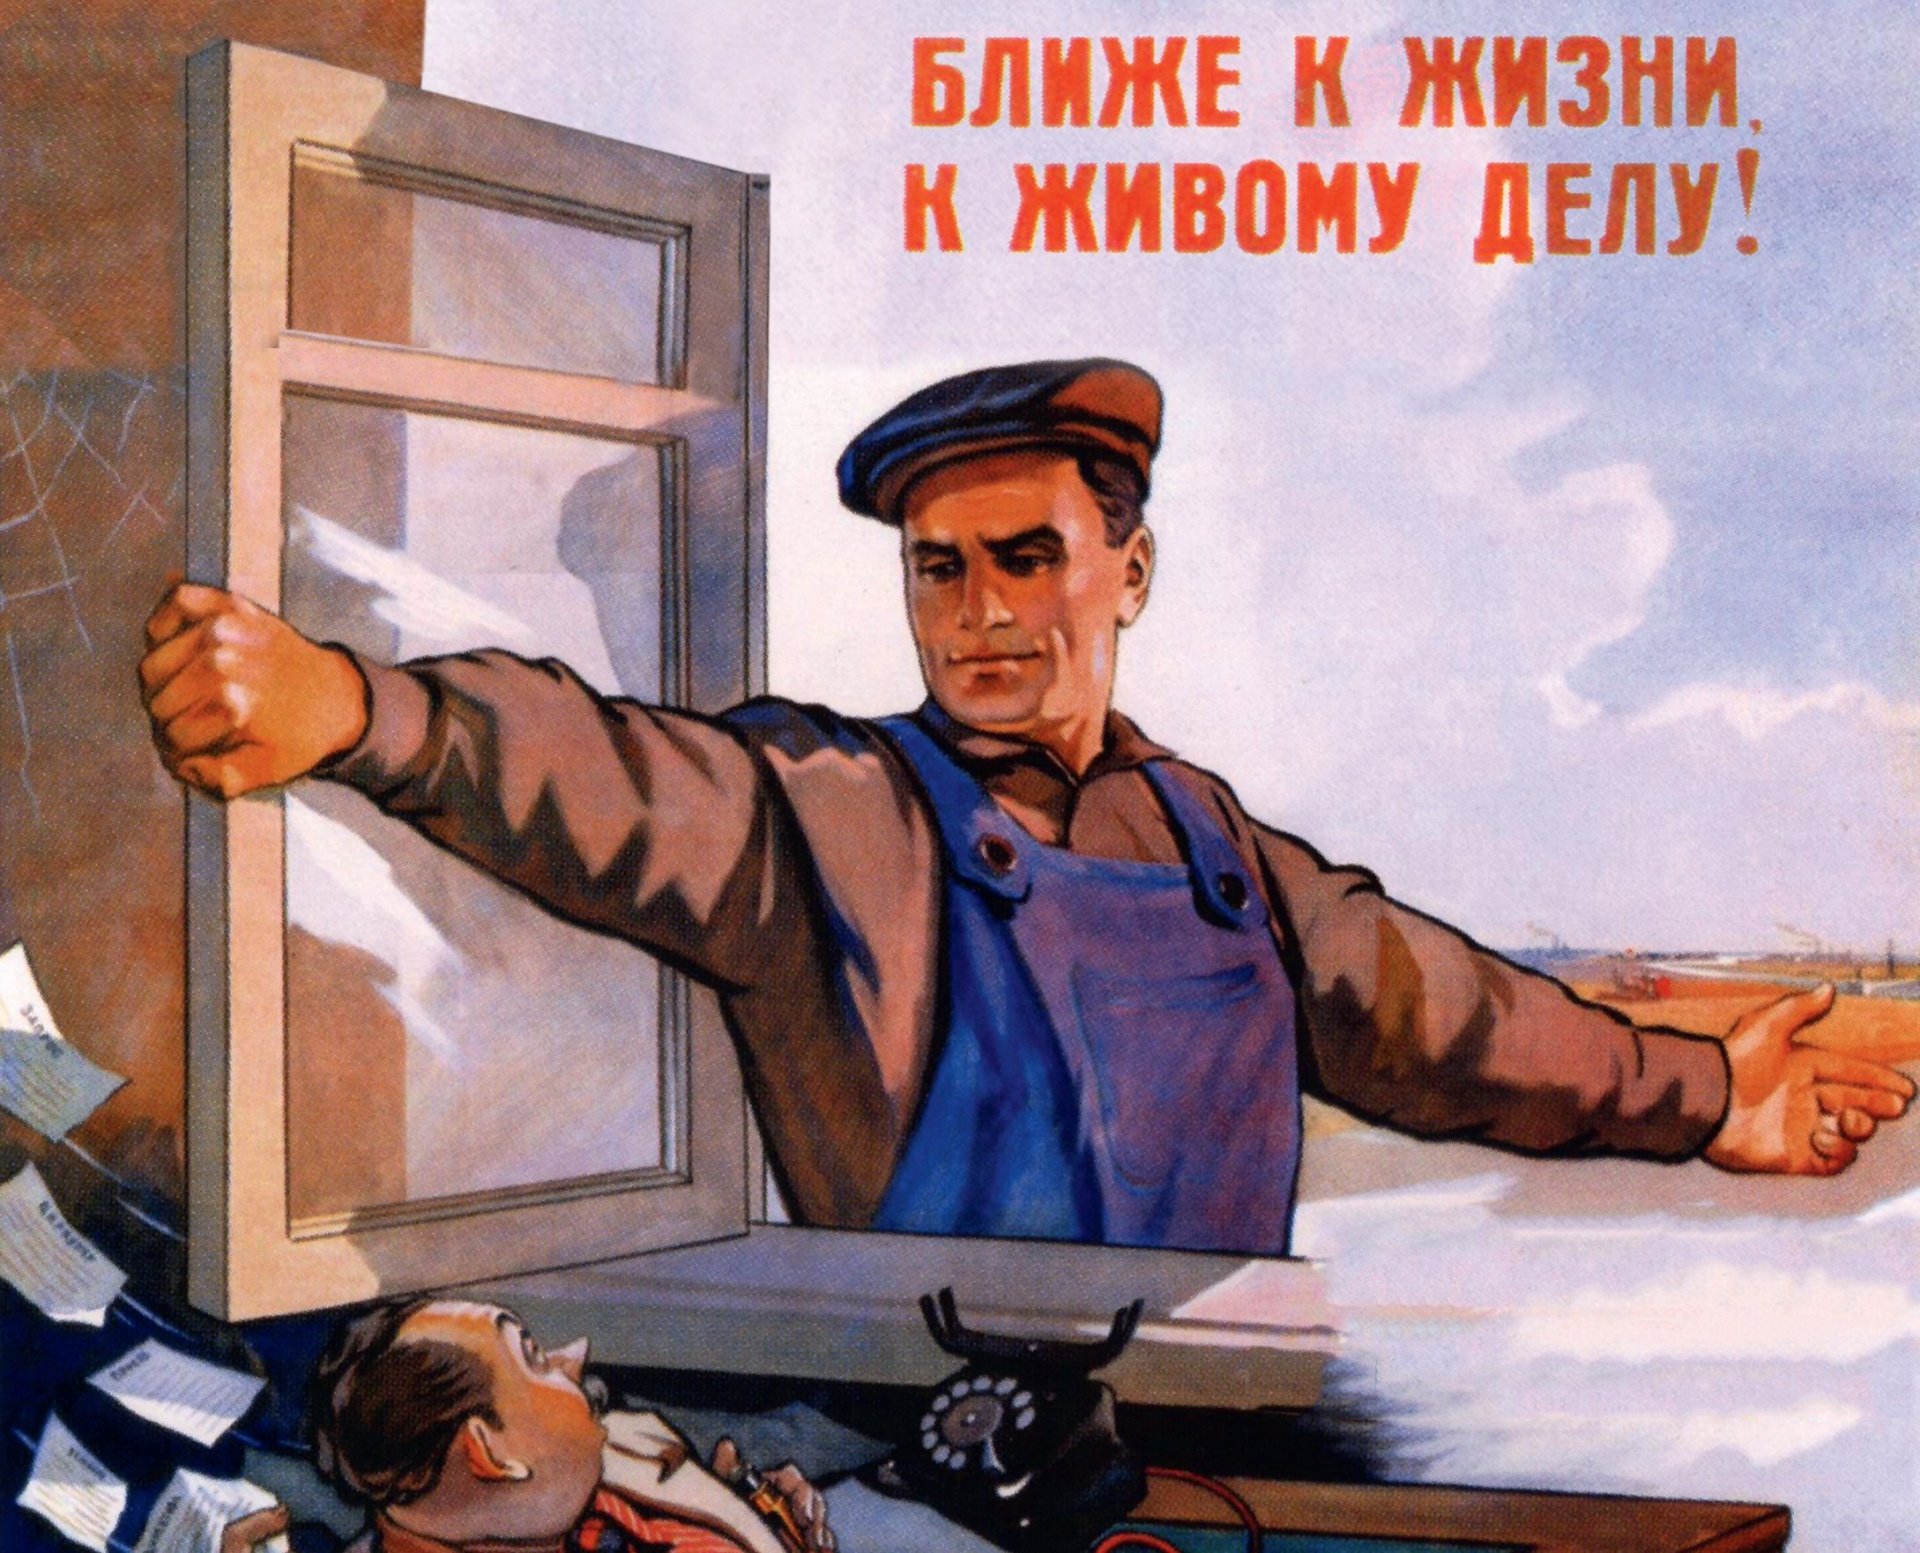 Буду работать плакат. Советские плакаты. Советский плакат рабочий. Скорей бы на работу плакат. Плакат с карей бы на работу.